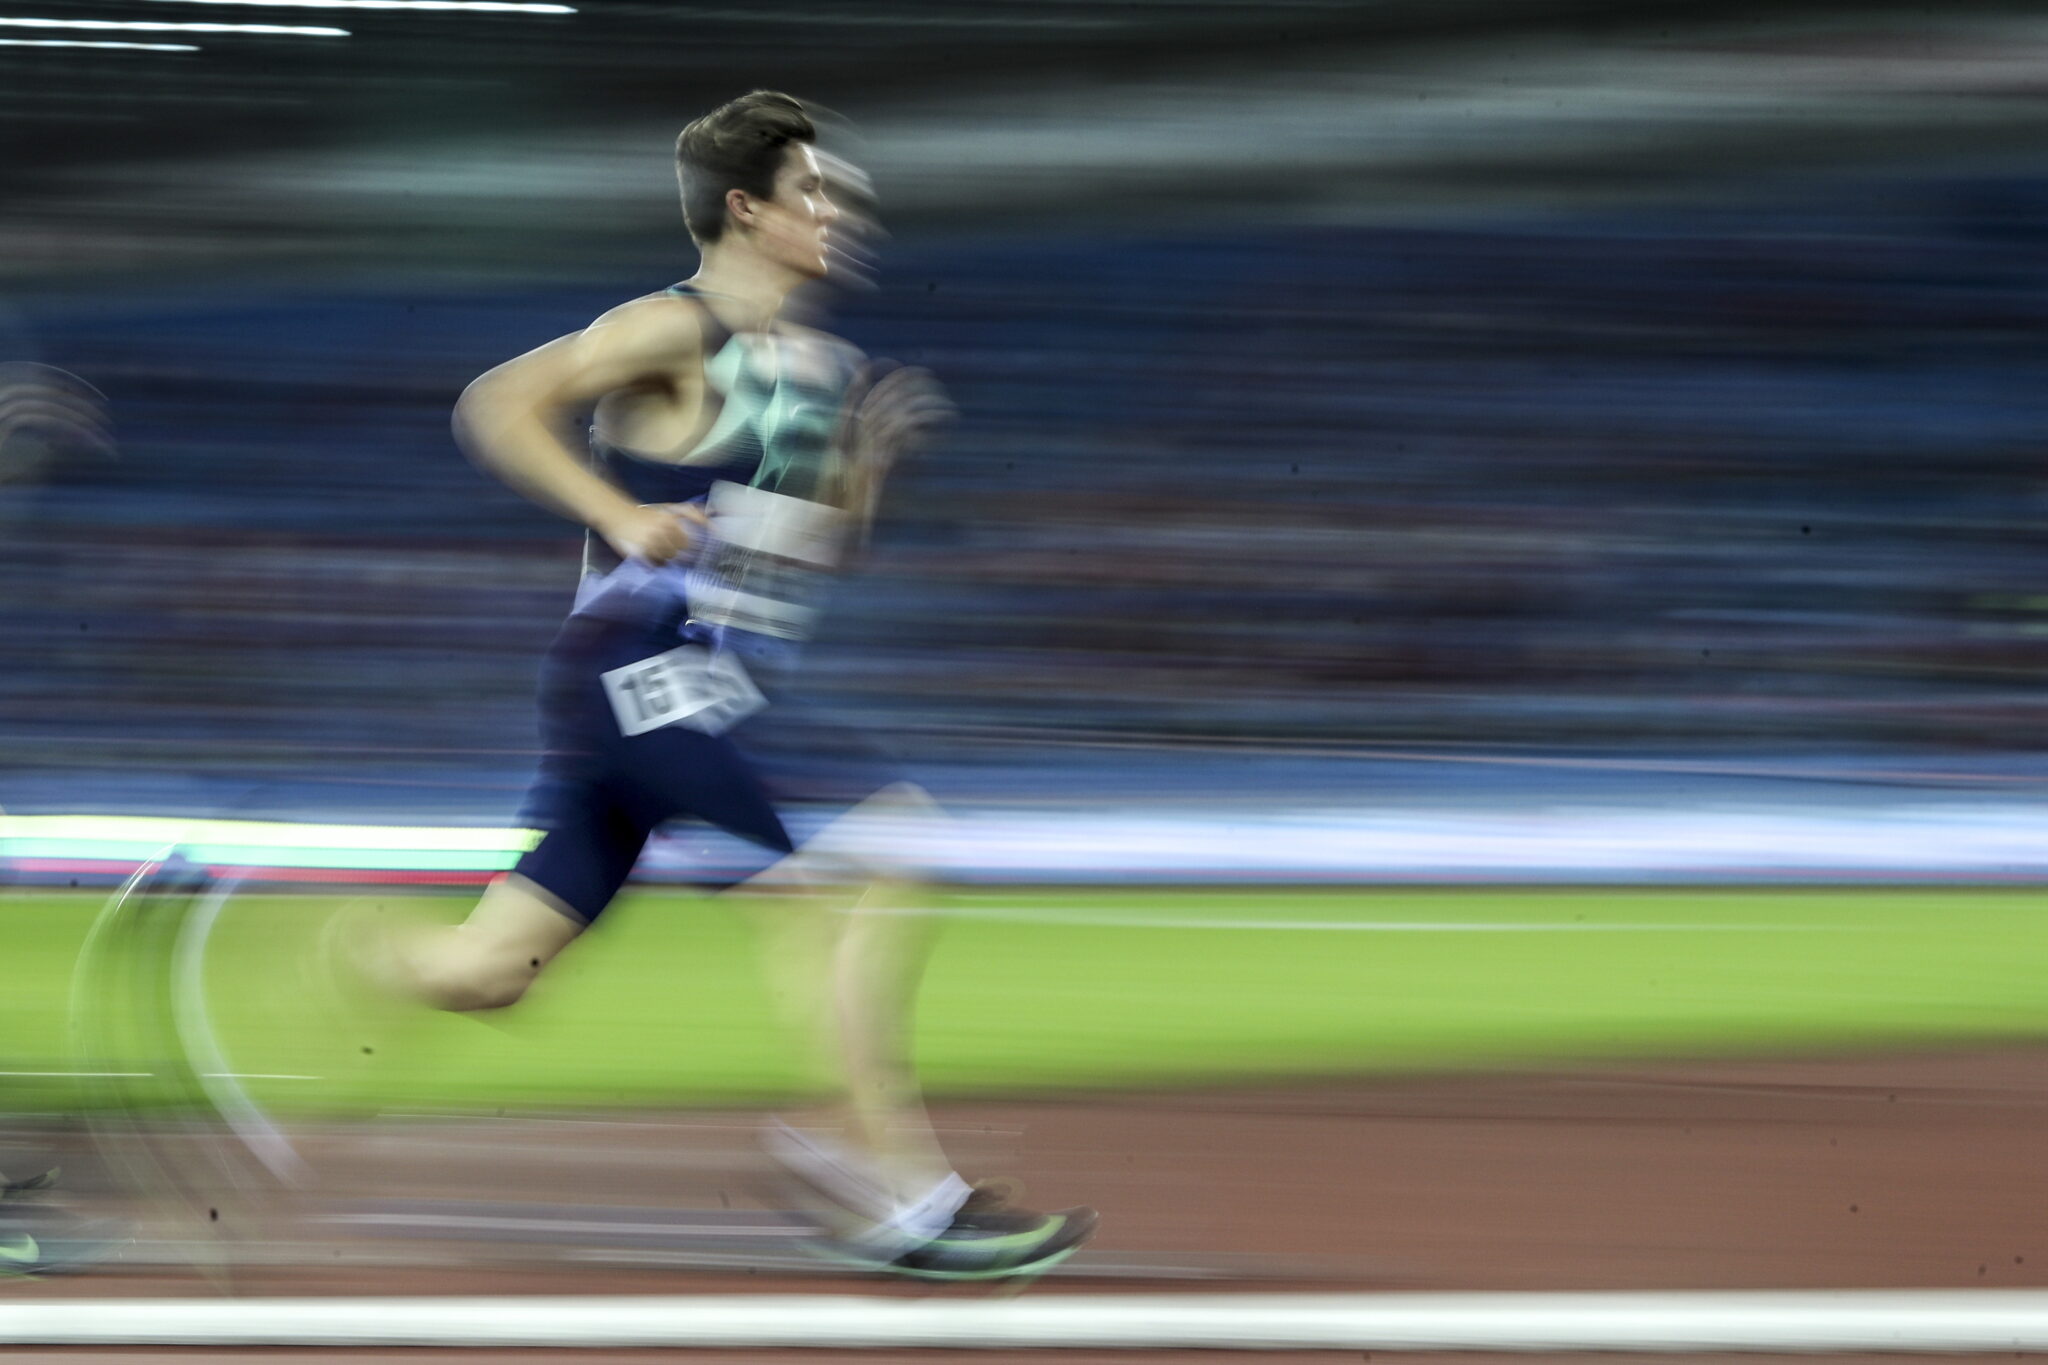 Ostrava, Czechy: Jakob Ingebrigtsen z Norwegii w akcji podczas biegu na 1500 m mężczyzn podczas zlotu lekkoatletycznego Golden Spike w ramach World Athletics Continental Tour, fot. EPA / MARTIN DIVISEK